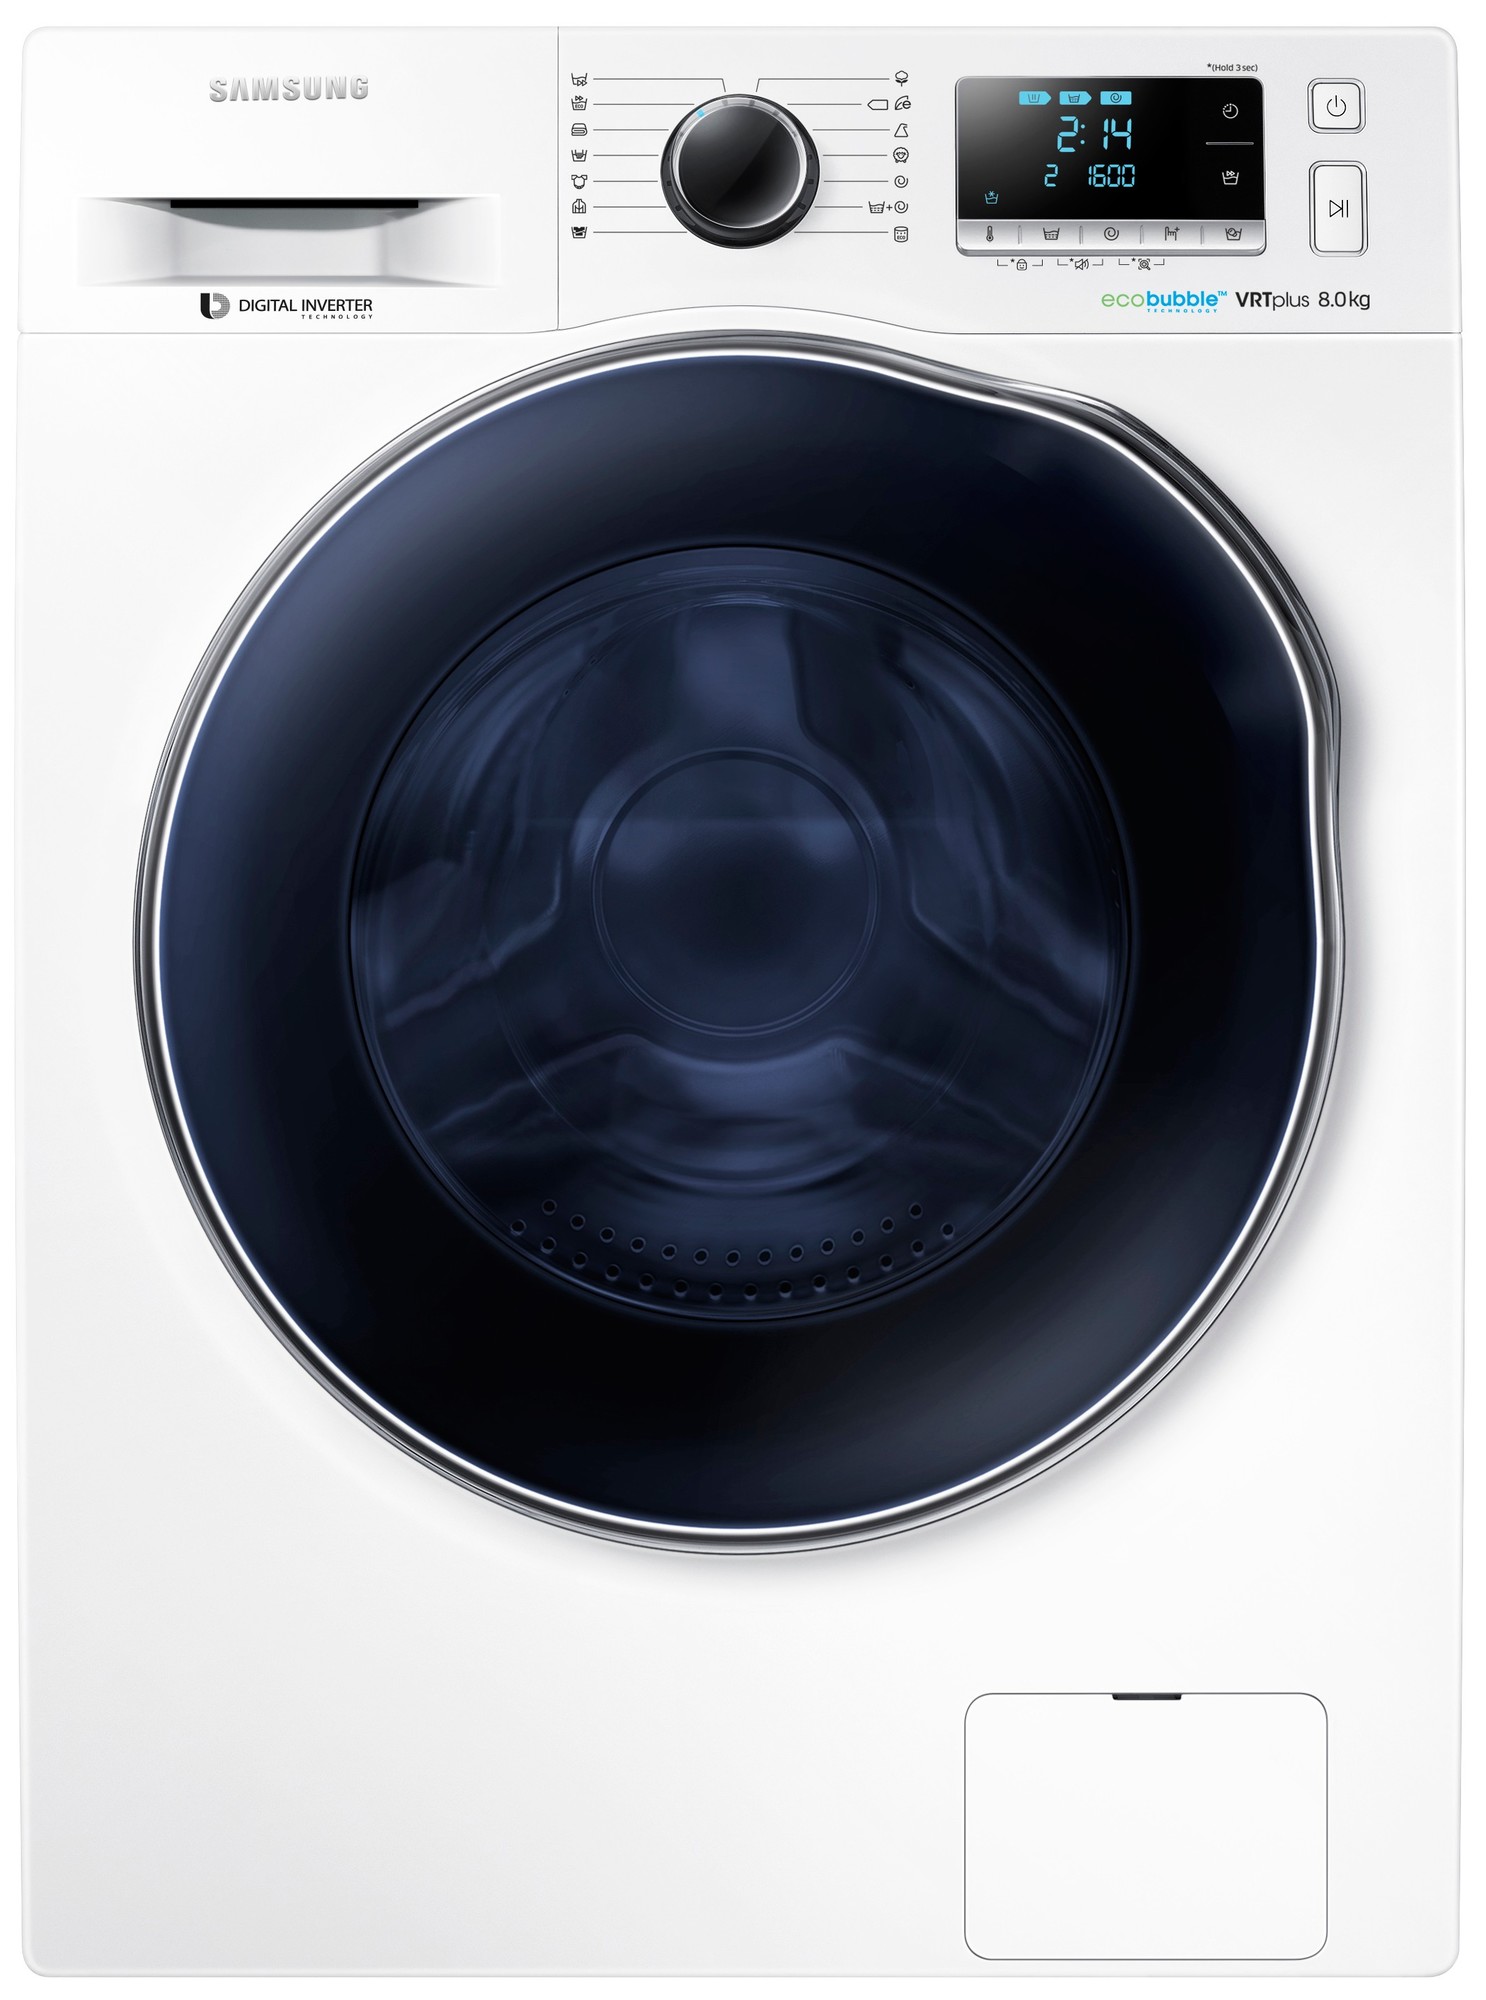 Hejse Falde tilbage Picket Samsung vaskemaskine WW80J6600AW | Elgiganten